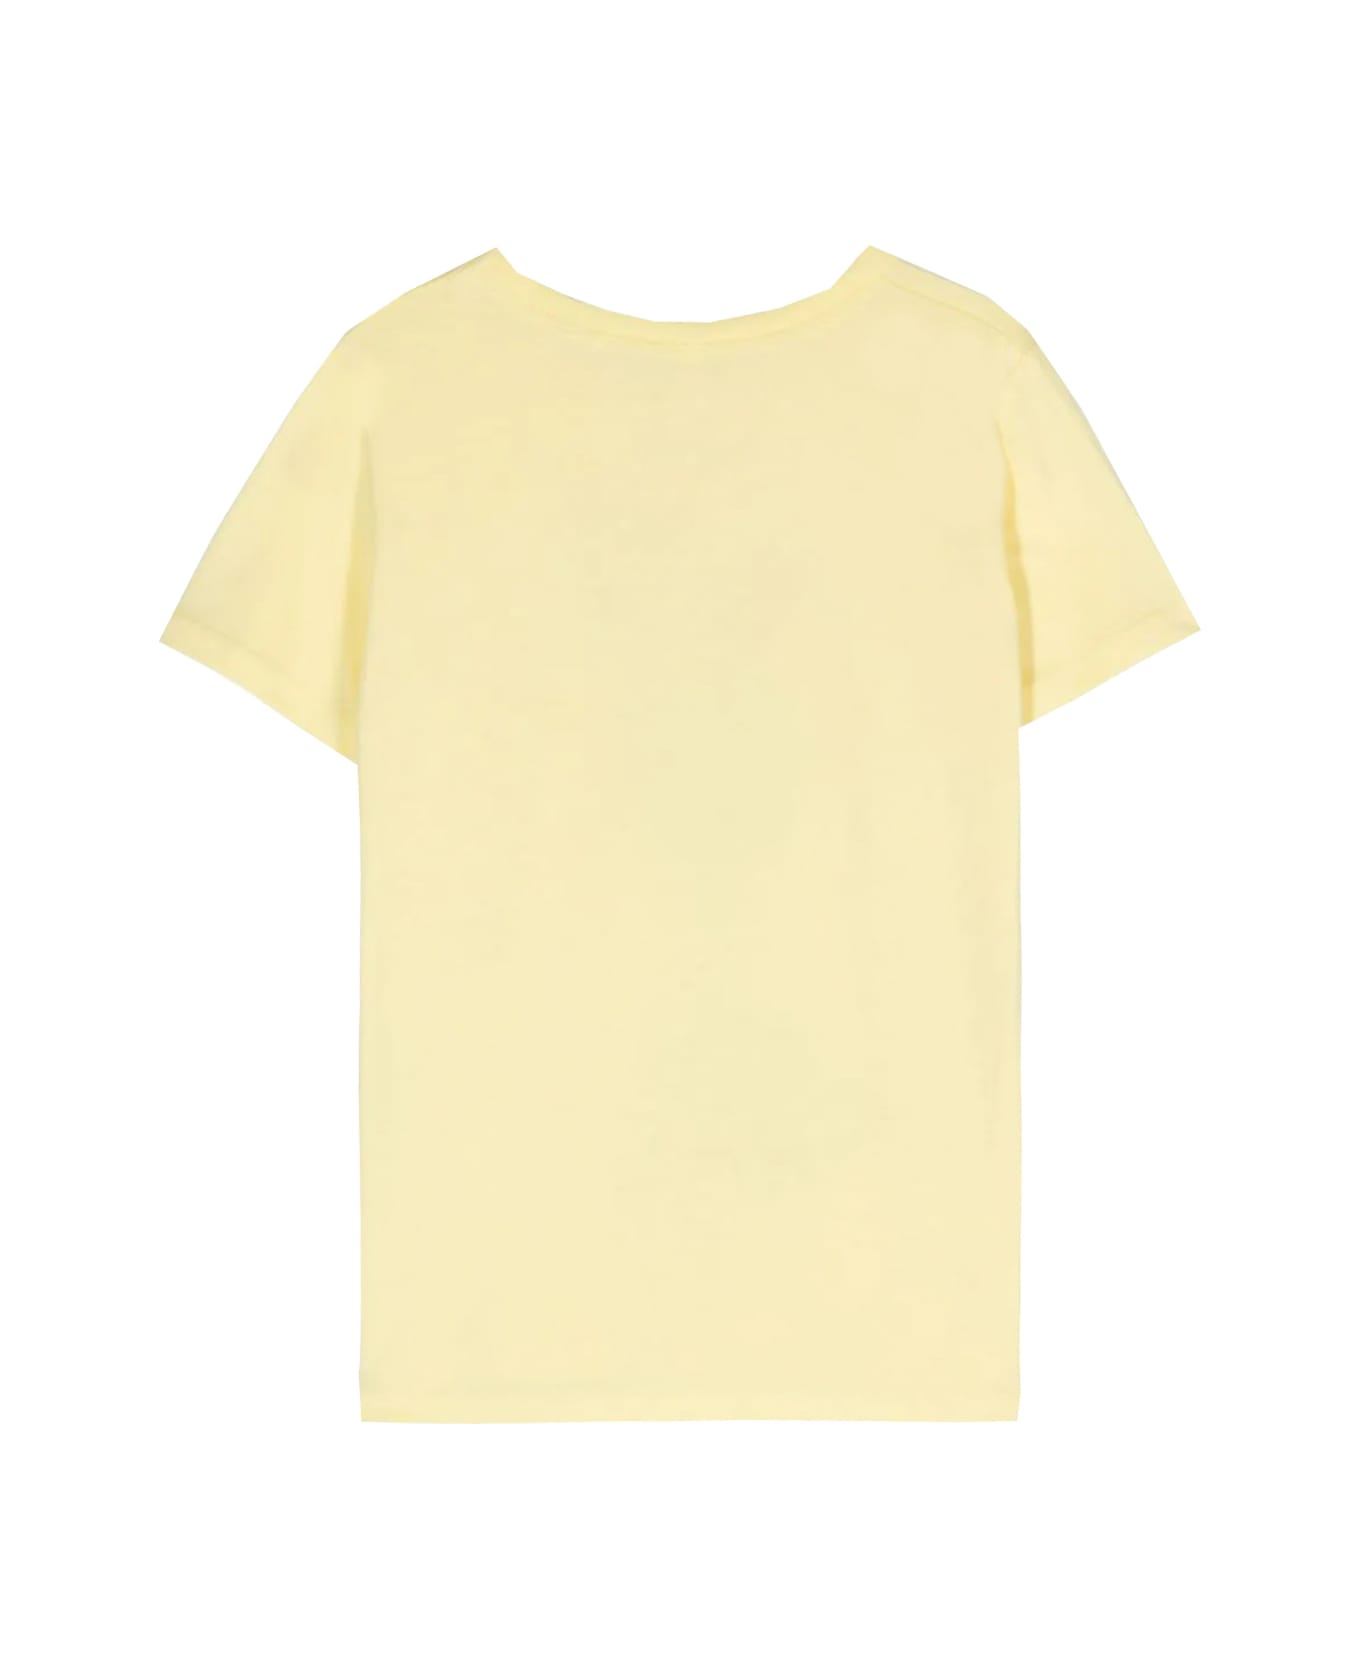 Stella McCartney Kids Cotton T-shirt - Yellow